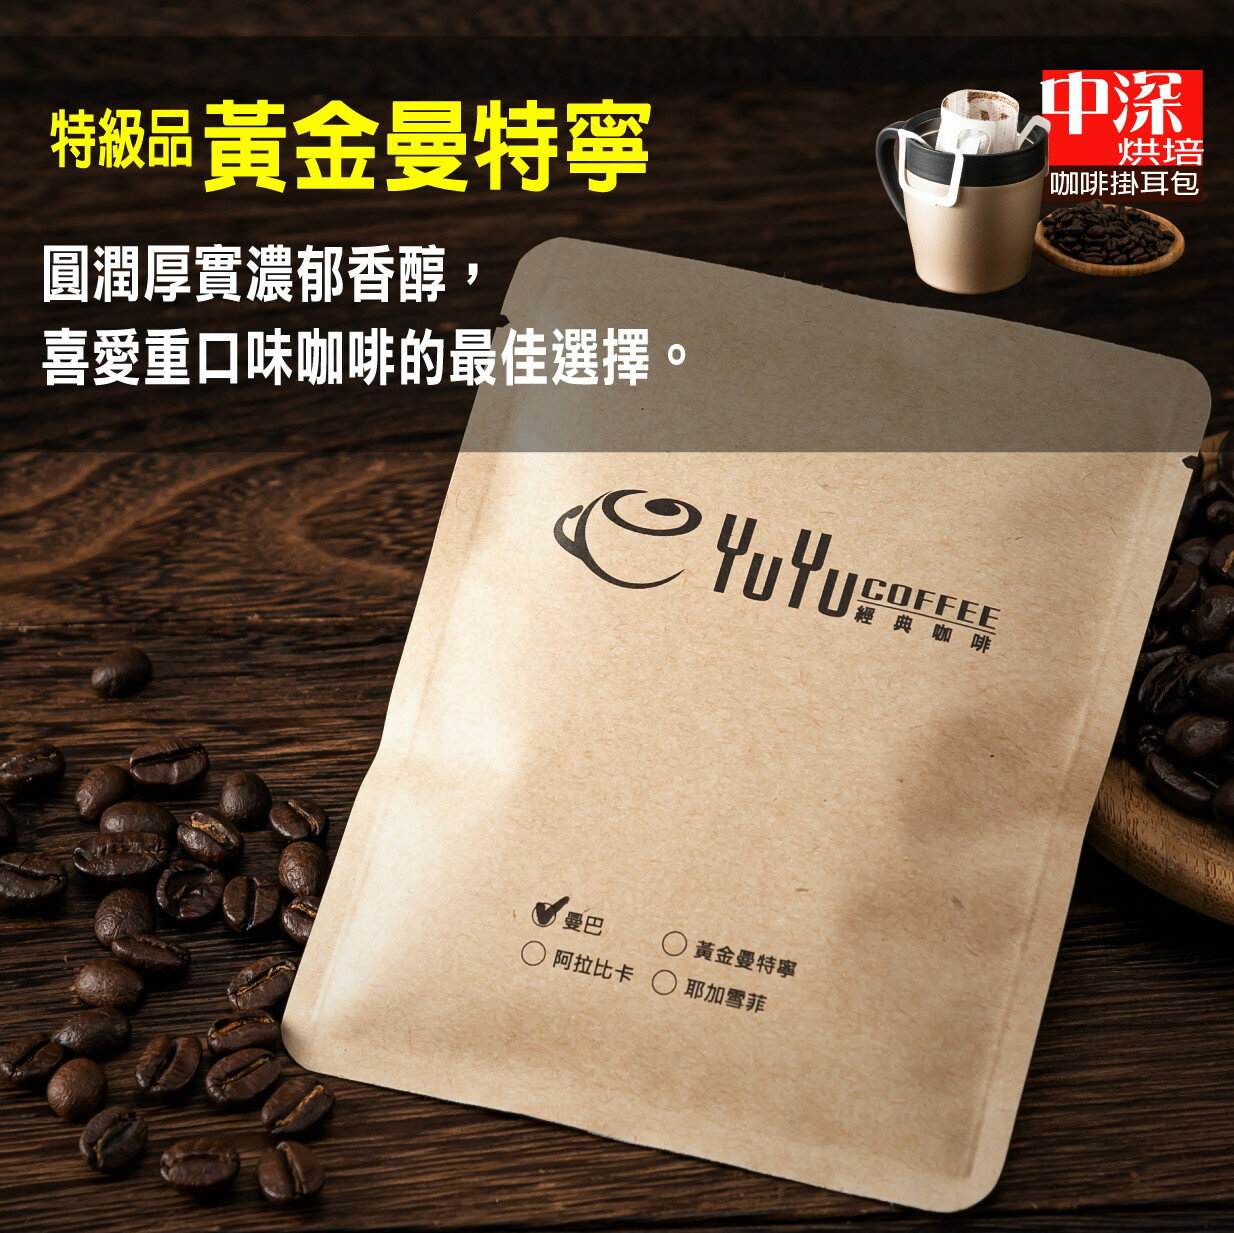 YuYu經典咖啡 特級品/黃金曼特寧(中深烘培) 濾泡式咖啡掛耳包 18g/一包